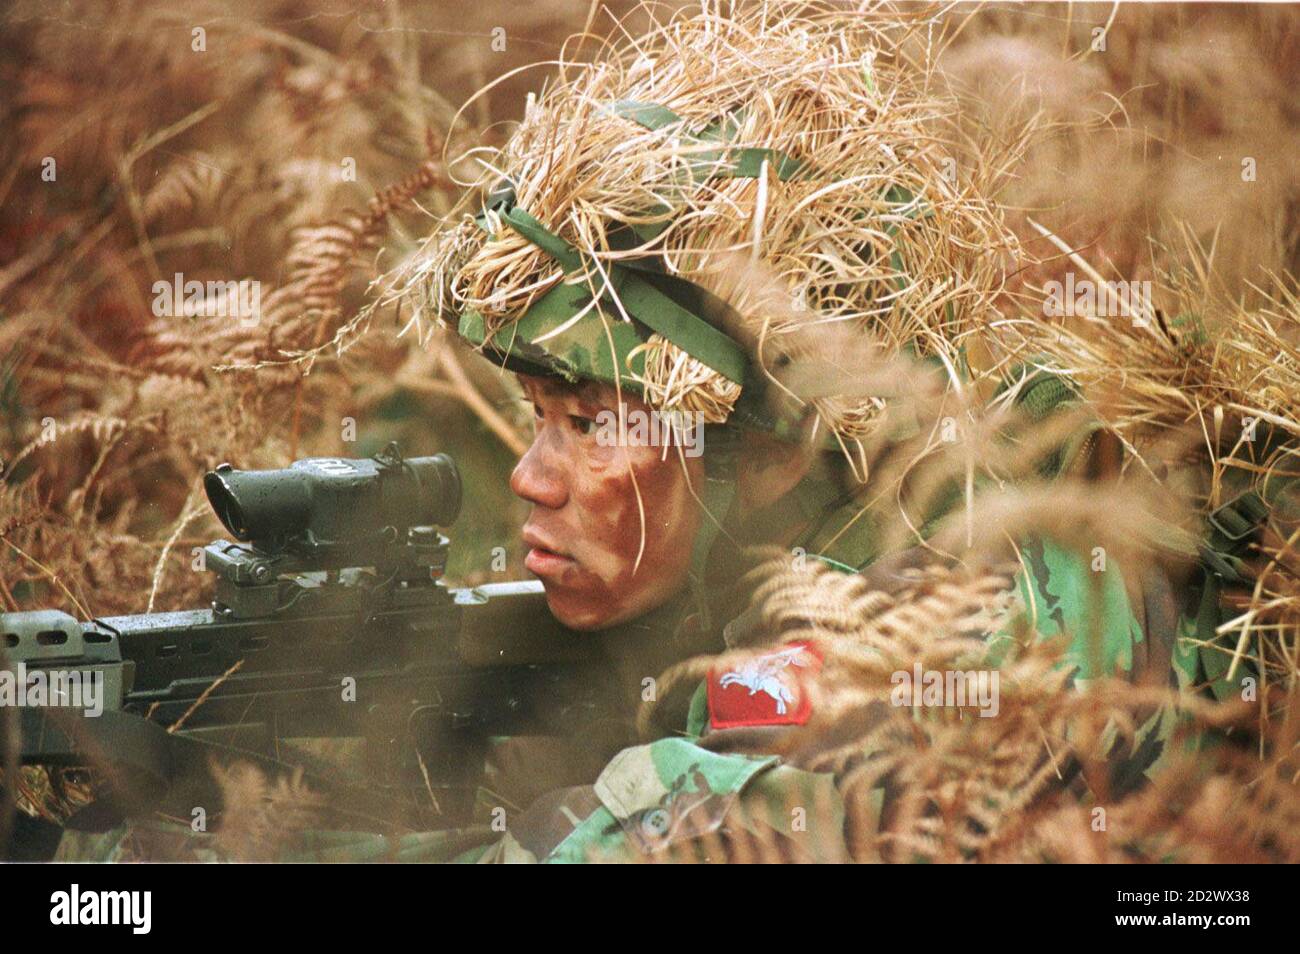 Un soldat de la compagnie de Gurkhas qui va bientôt s'envoler en Bosnie, dans leur premier déploiement opérationnel depuis le conflit des Malouines, s'entraîne à leur base de Church Cookham dans le Hampshire aujourd'hui (vendredi). L'avance des troupes népalaises partira dimanche pour être suivie peu après par les 100 soldats restants dont la tâche sera d'assurer la sécurité et la protection du quartier général de la division. * 21/02/2003: La haute Cour a été vendredi 21 février 2003, donnant jugement sur une offre de l'ancien Gurkhas qui a servi avec l'armée britannique pour une décision que le ministère de la Défense i Banque D'Images